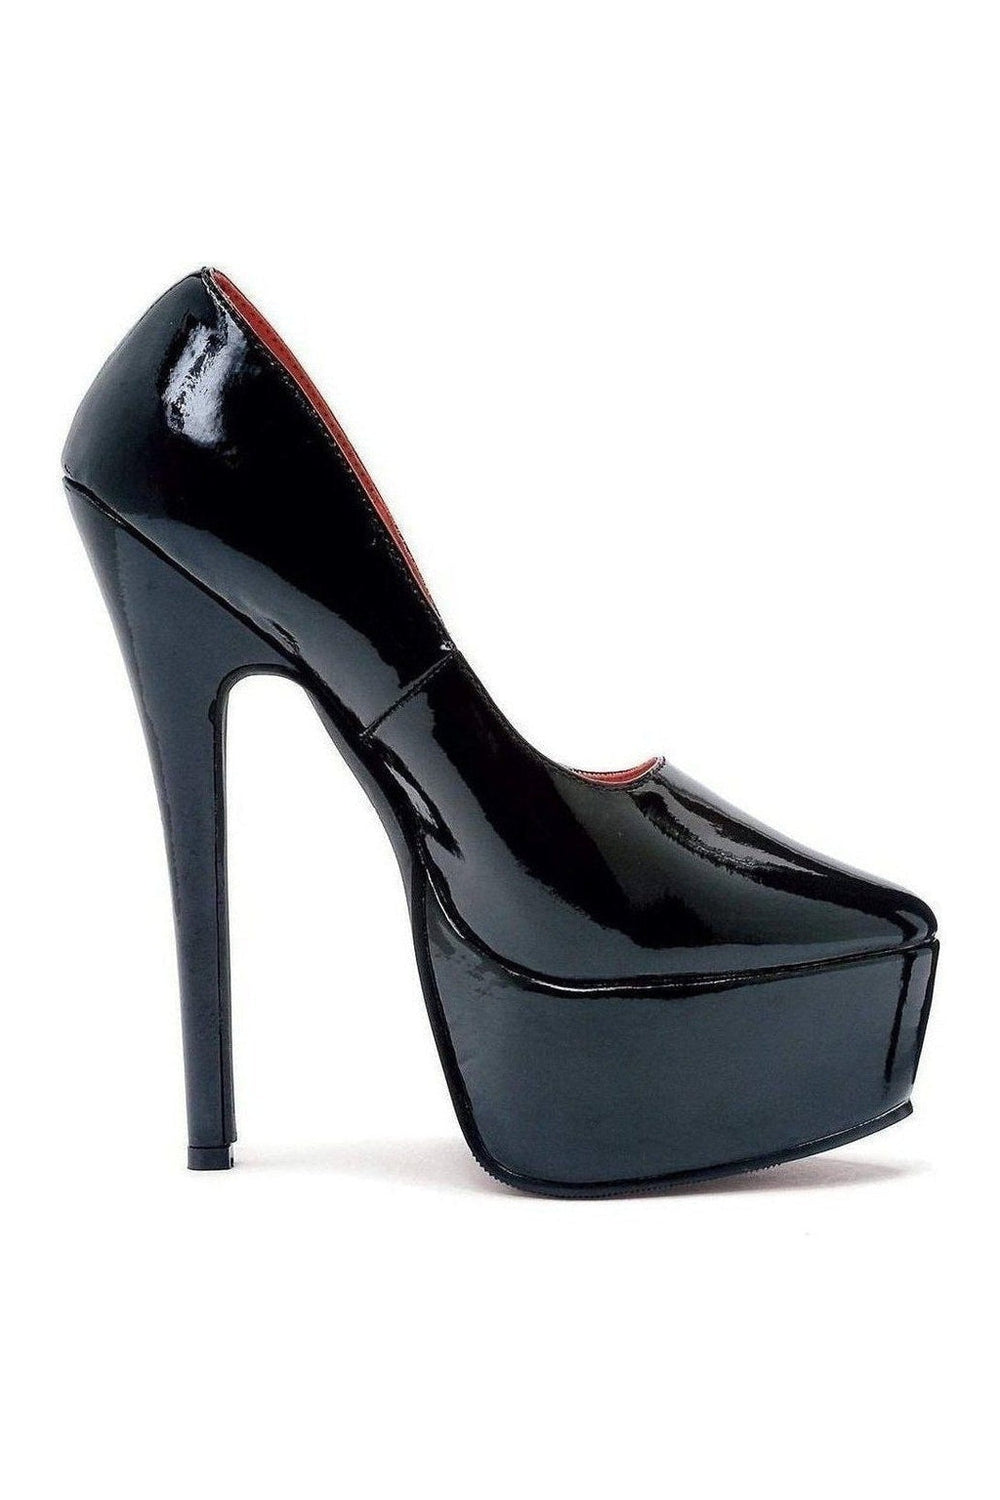 Ellie Shoes Pumps Platform Stripper Shoes | Buy at Sexyshoes.com